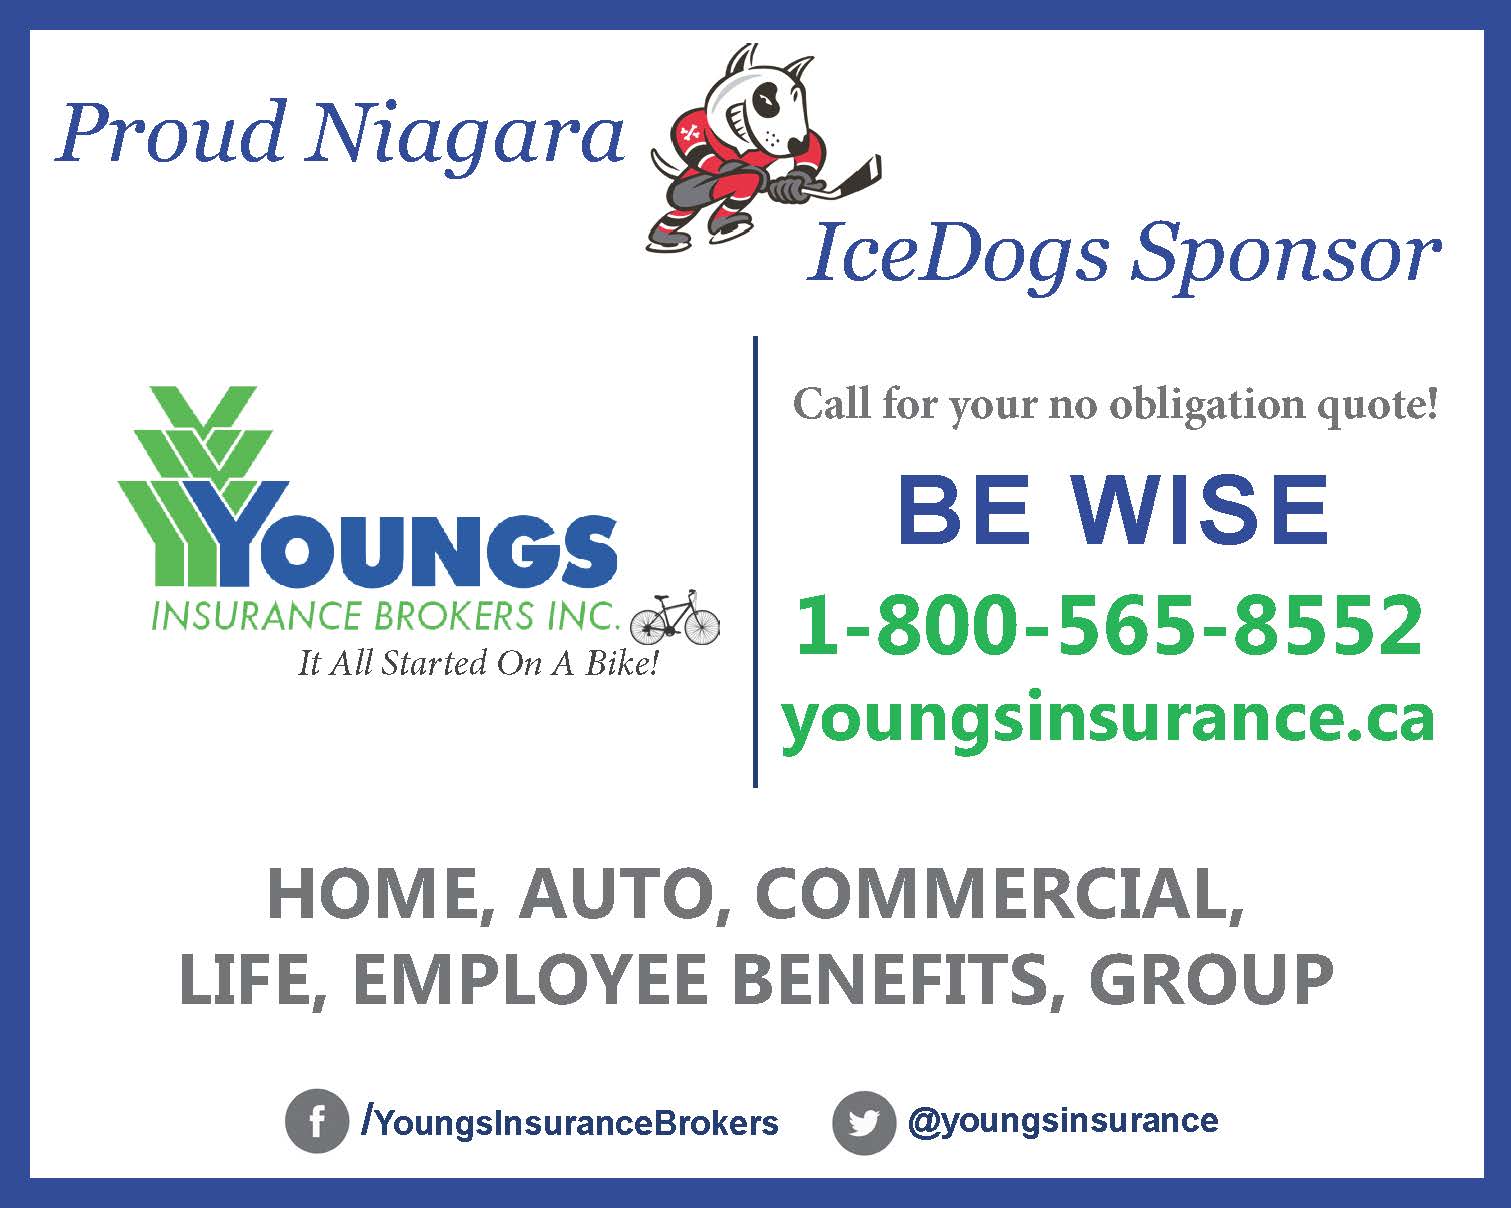 Proud Niagara Ice Dogs Sponsor